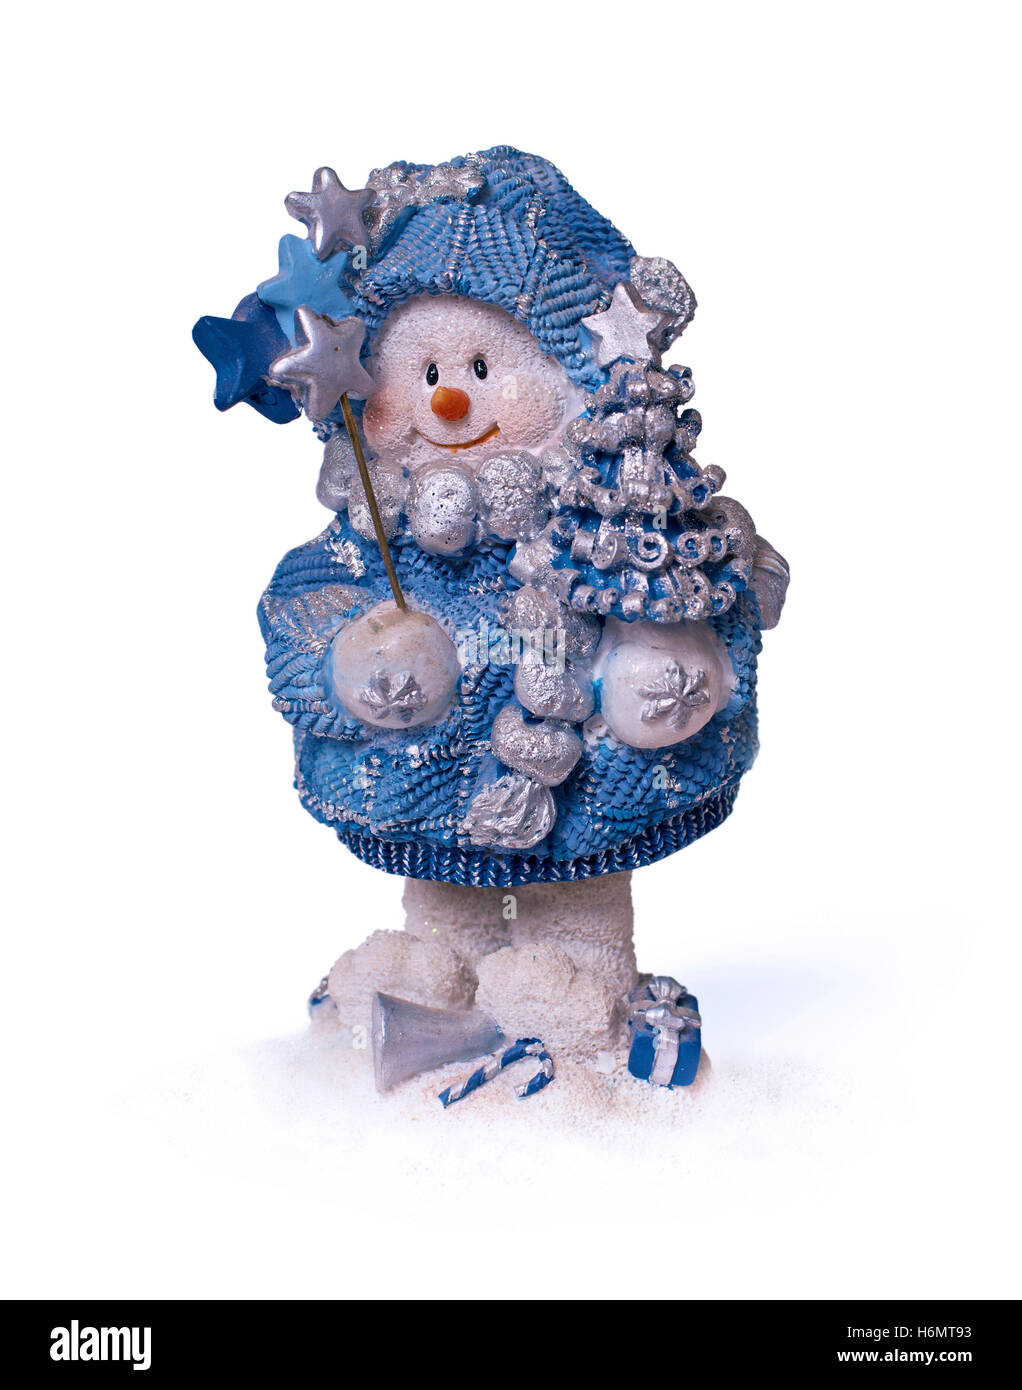 Navidad snowman con varita mágica Foto de stock